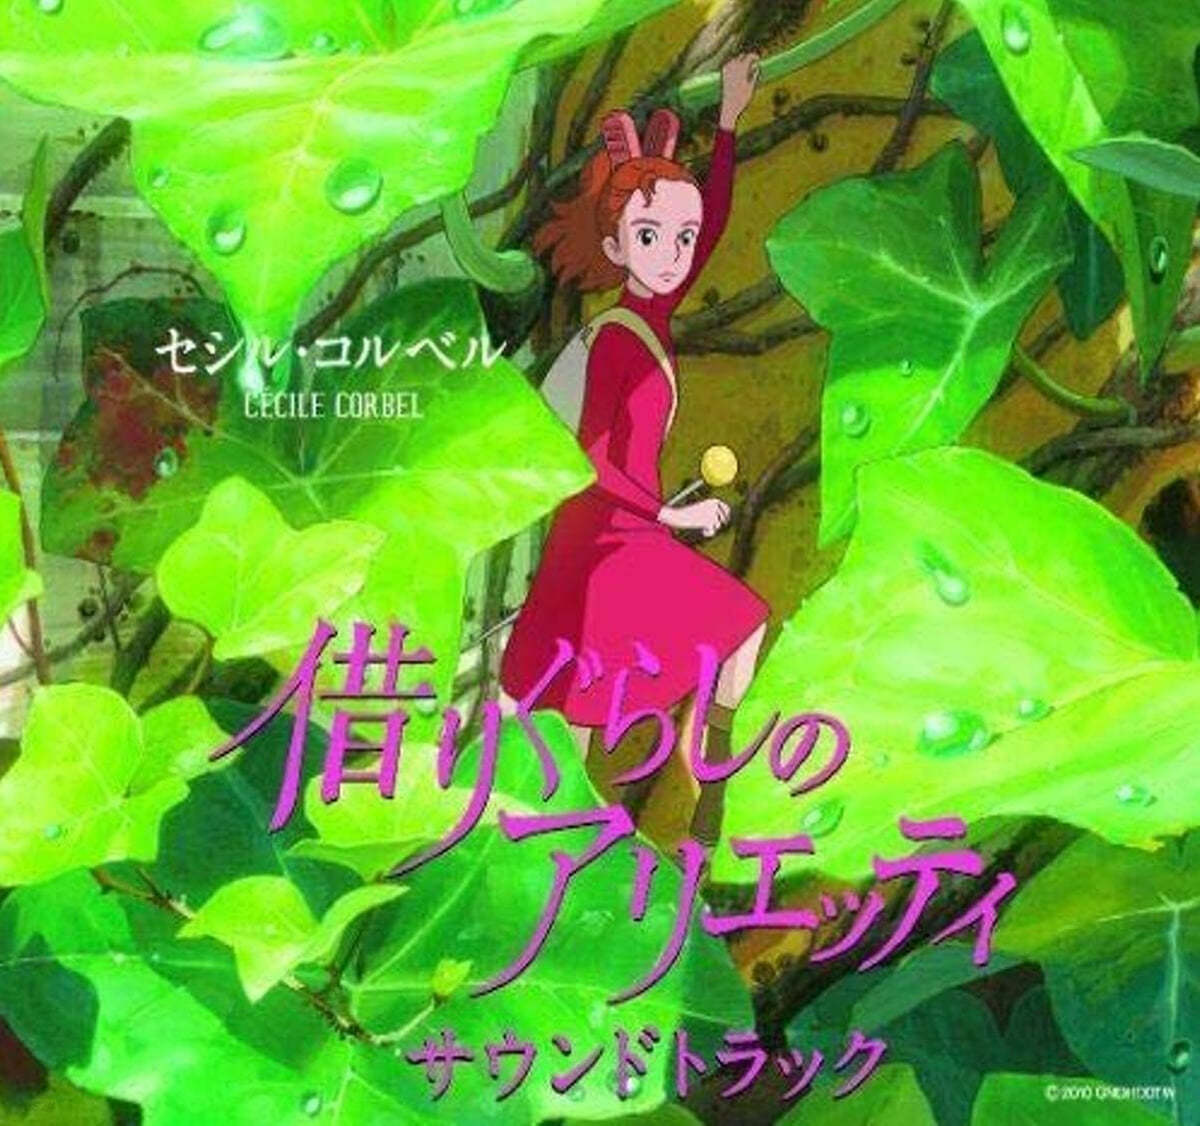 마루 밑 아리에티 애니메이션 음악 (The Secret World of Arrietty OST by Cecile Corbel)